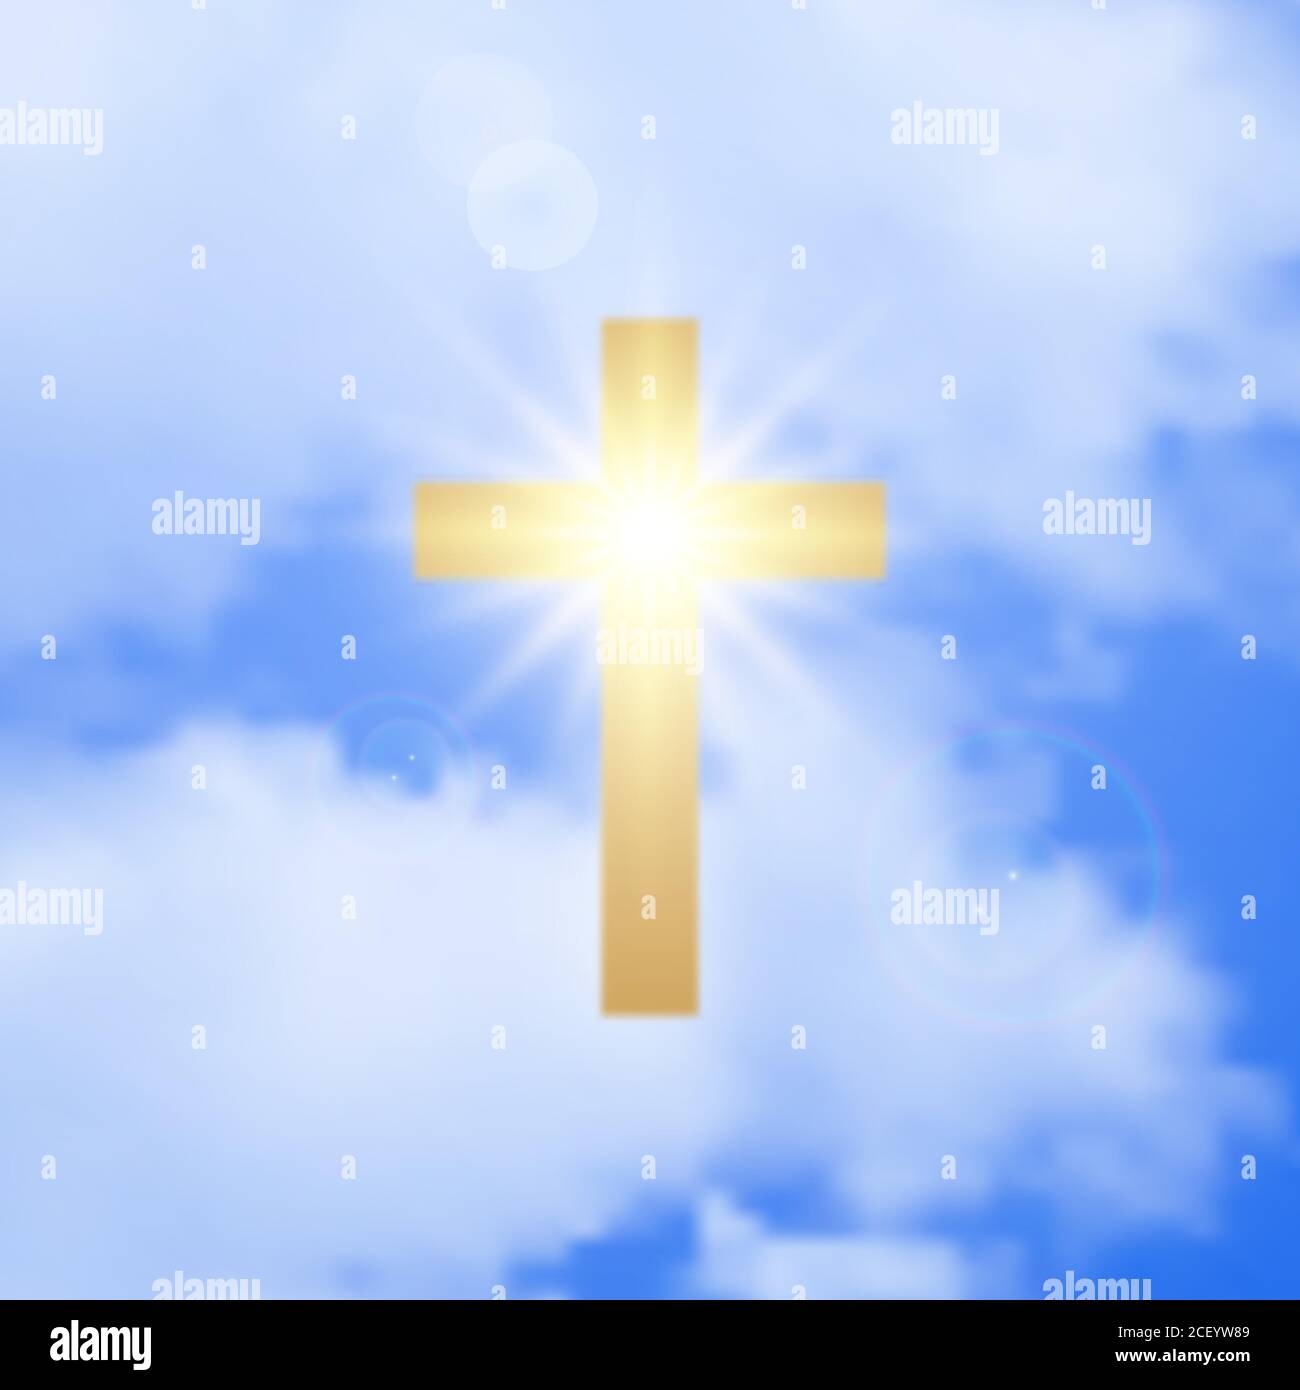 Croce Santa in heaven.A simbolo dorato incandescente di fede nelle nubi.Easter concept.elemento cristiano di disegno. Illustrazione vettoriale. Illustrazione Vettoriale